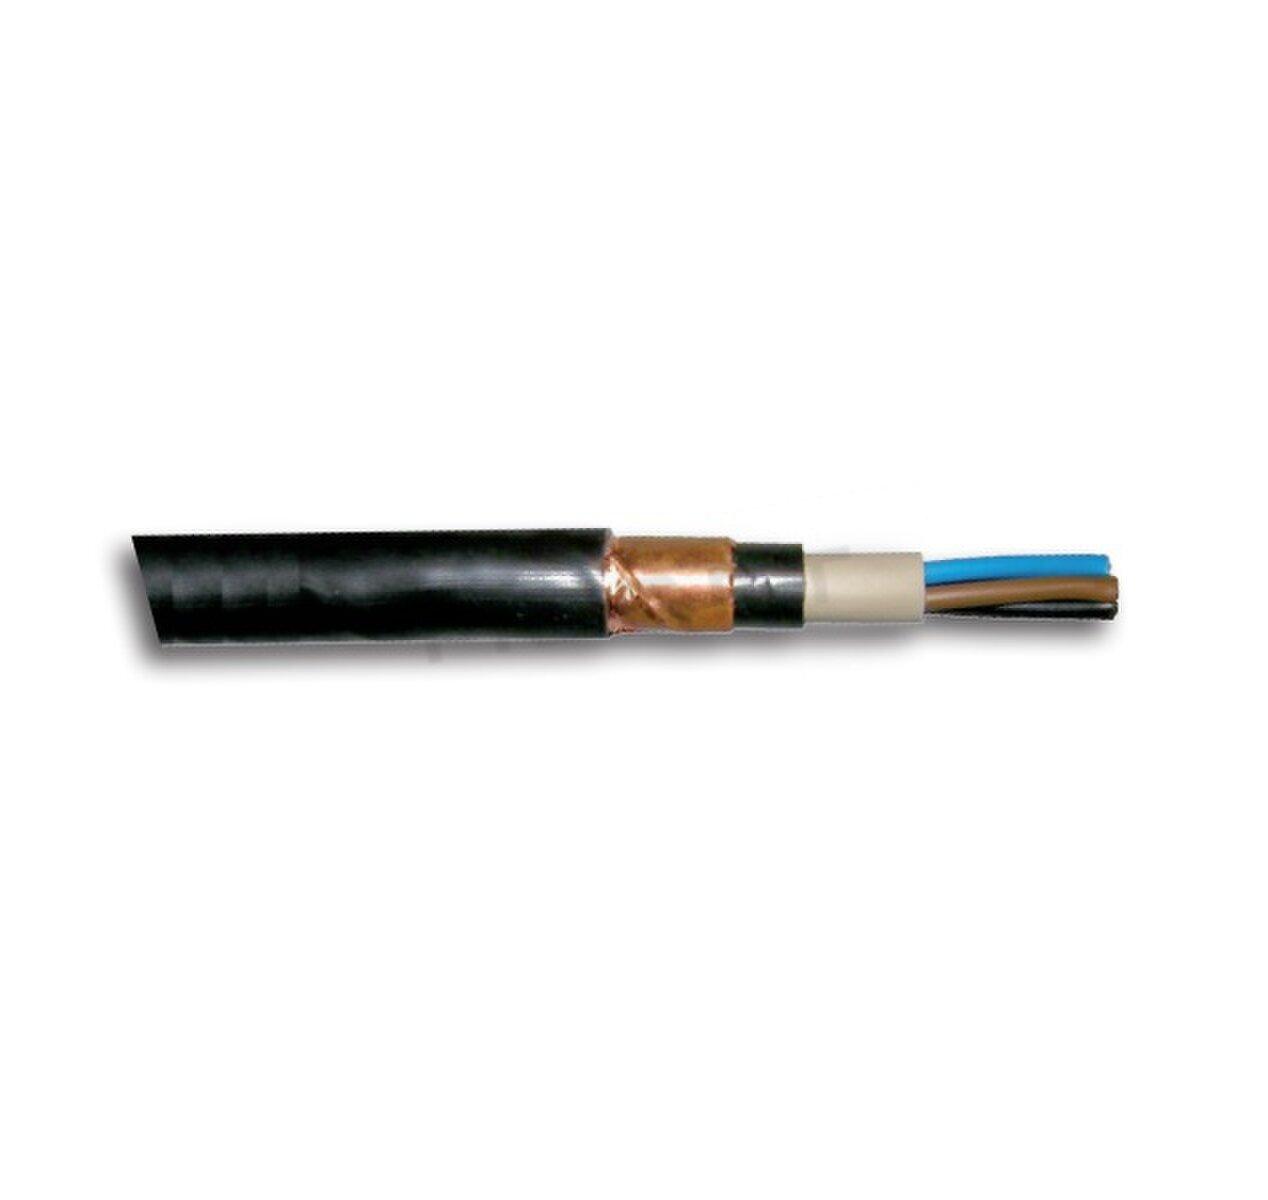 Kábel 1-CYKFY-O 4x2,5 mm2 silový